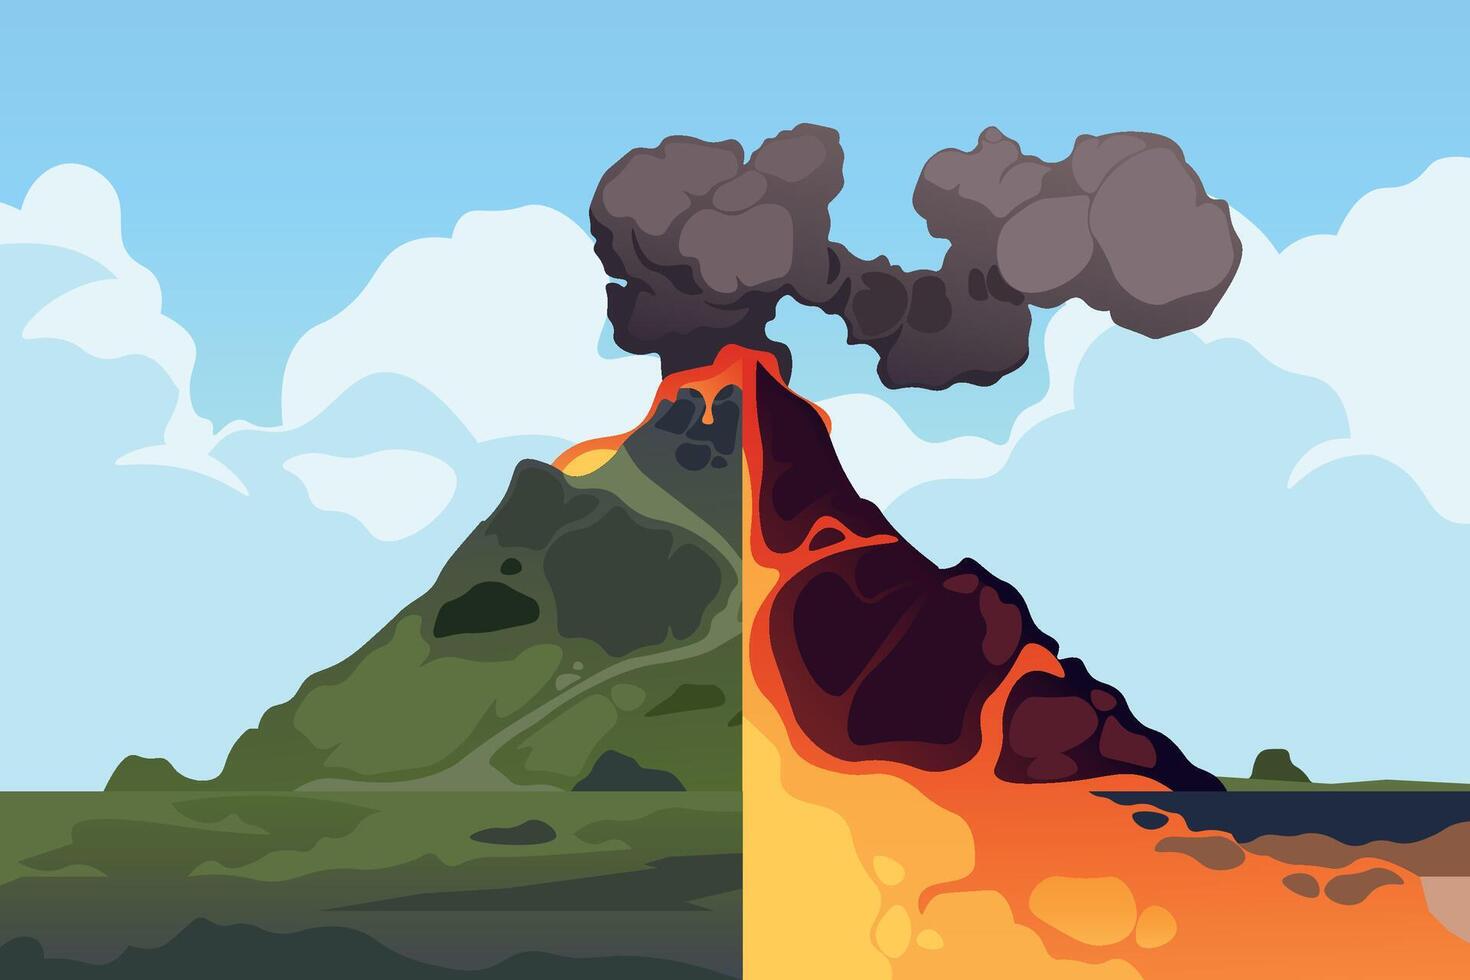 volcán cruzar sección. volcánico montaña erupción sección transversal esquema, tierra corteza estructura con magma cámara, gases y cráter lava ceniza. vector infografía